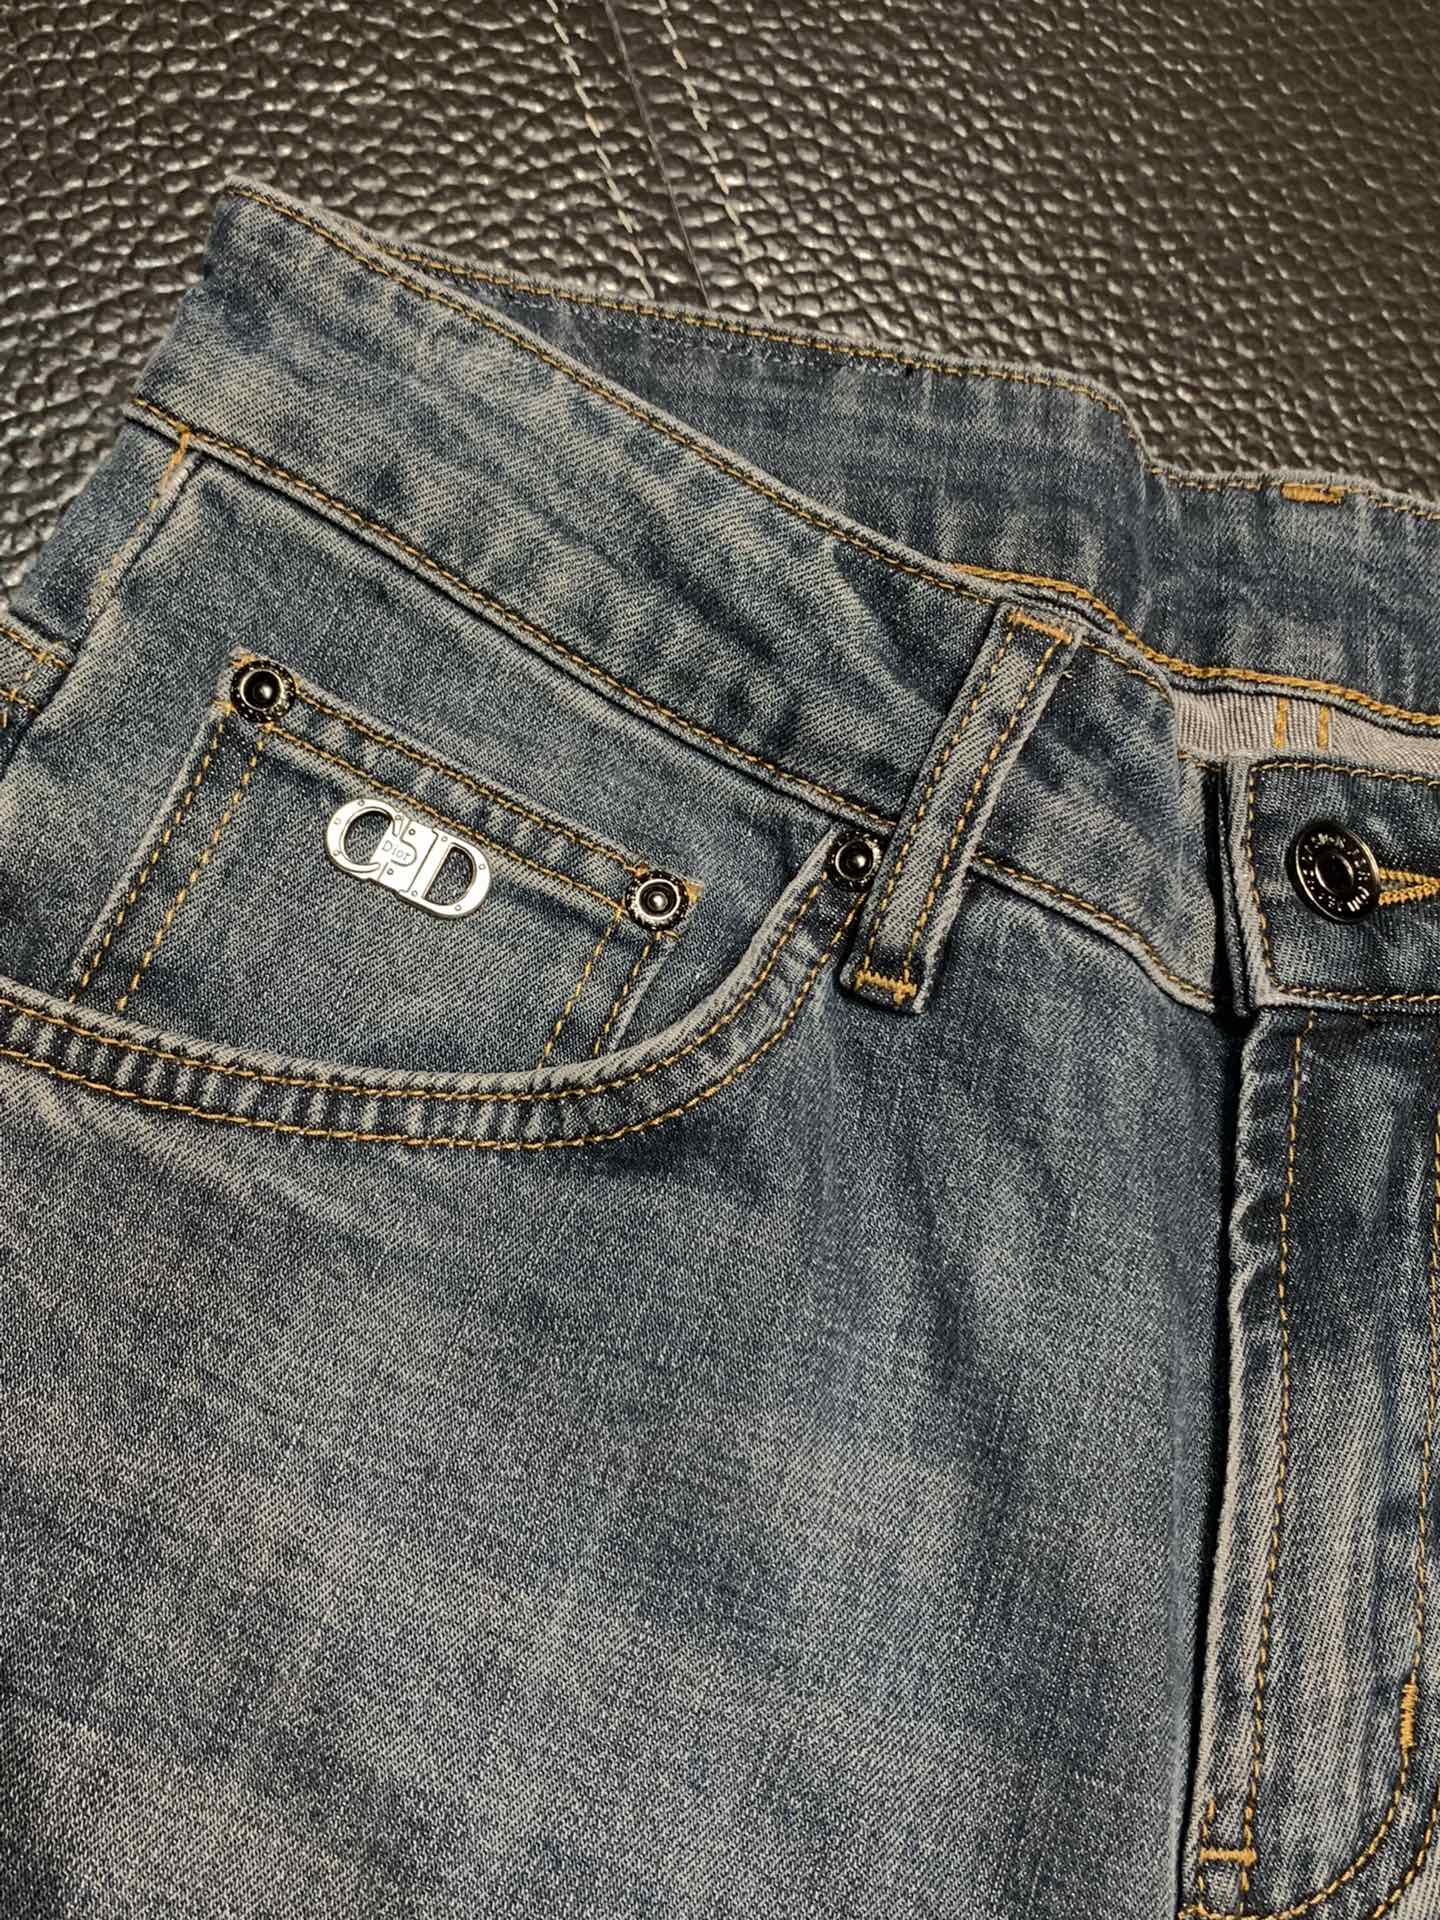 Dior迪奥独家专供新款休闲牛仔裤高端版本专柜定制面料透气舒适度高细节无可挑剔品牌元素设计理念体现高品质